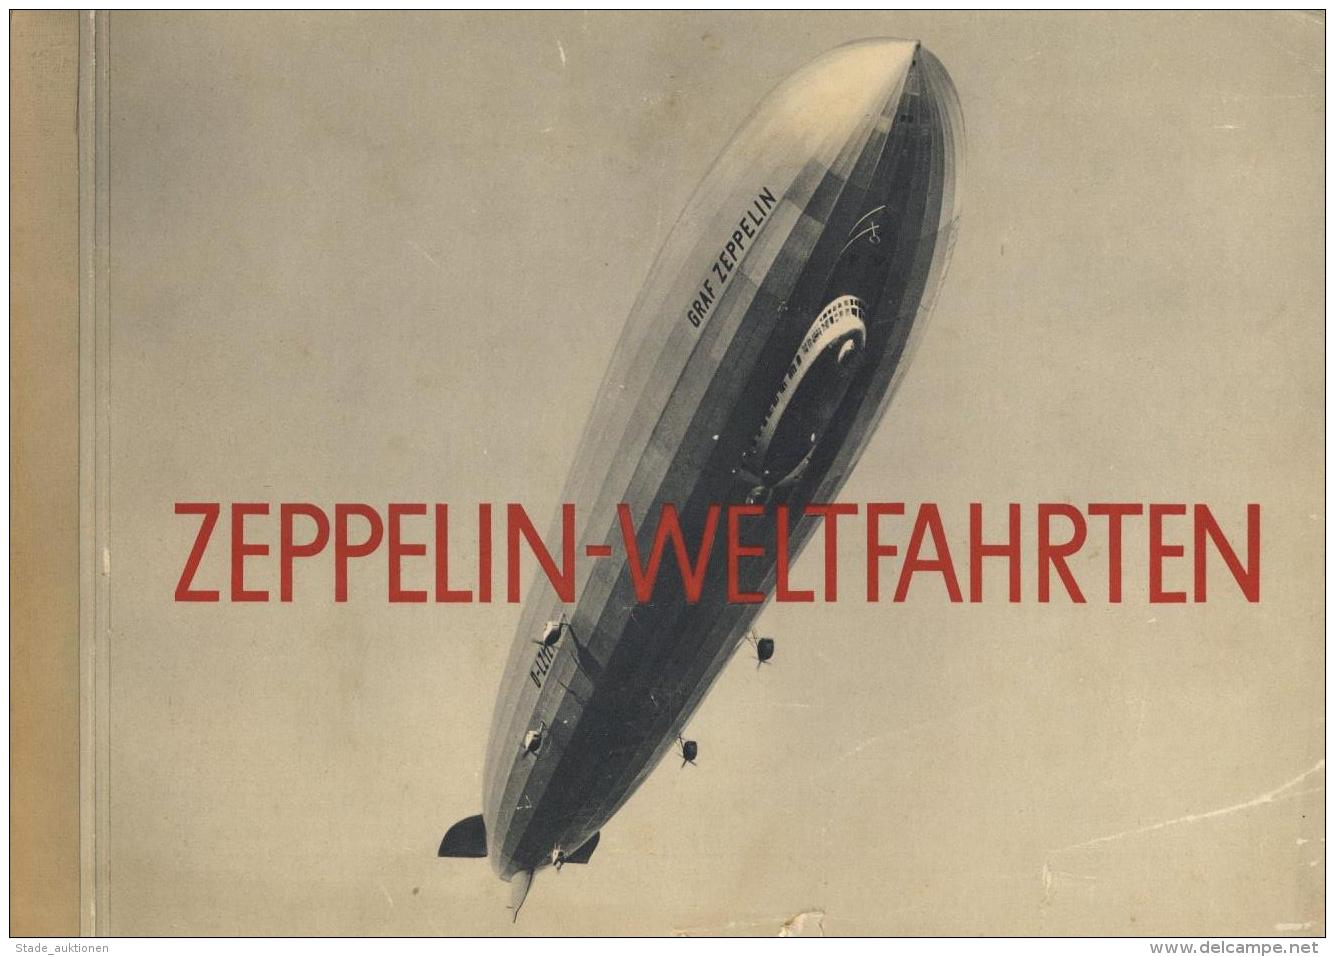 Sammelbild-Album Zeppelin Weltfahrten 1933 Bilderstelle Lohse Kompl. II (Einband Einriss) Dirigeable - Non Classificati